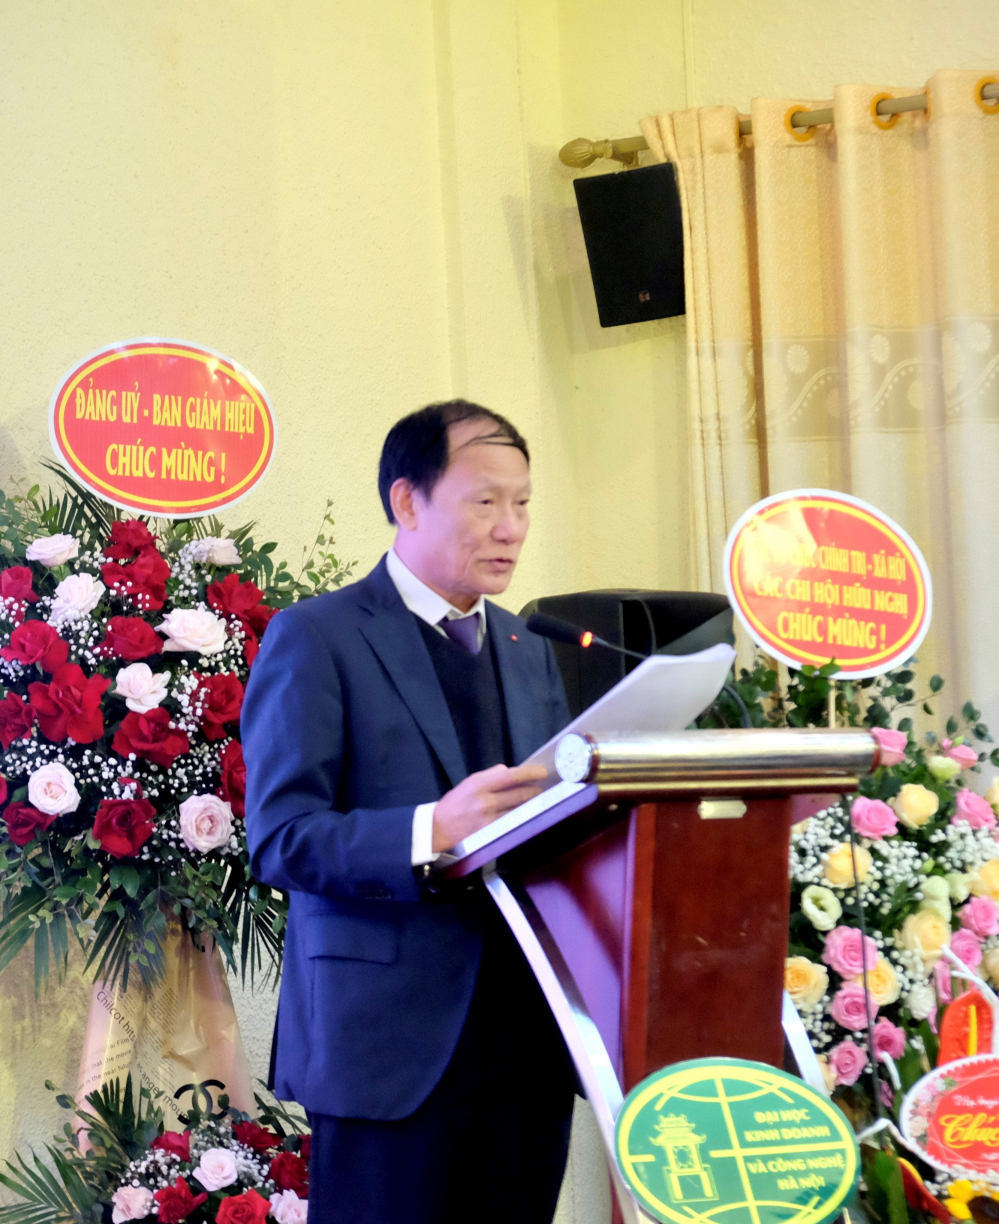 GS. TS. Nguyễn Công Nghiệp, Phó Hiệu trưởng Trường Đại học Kinh doanh và Công nghệ Hà Nội, phát biểu tại Đại hội